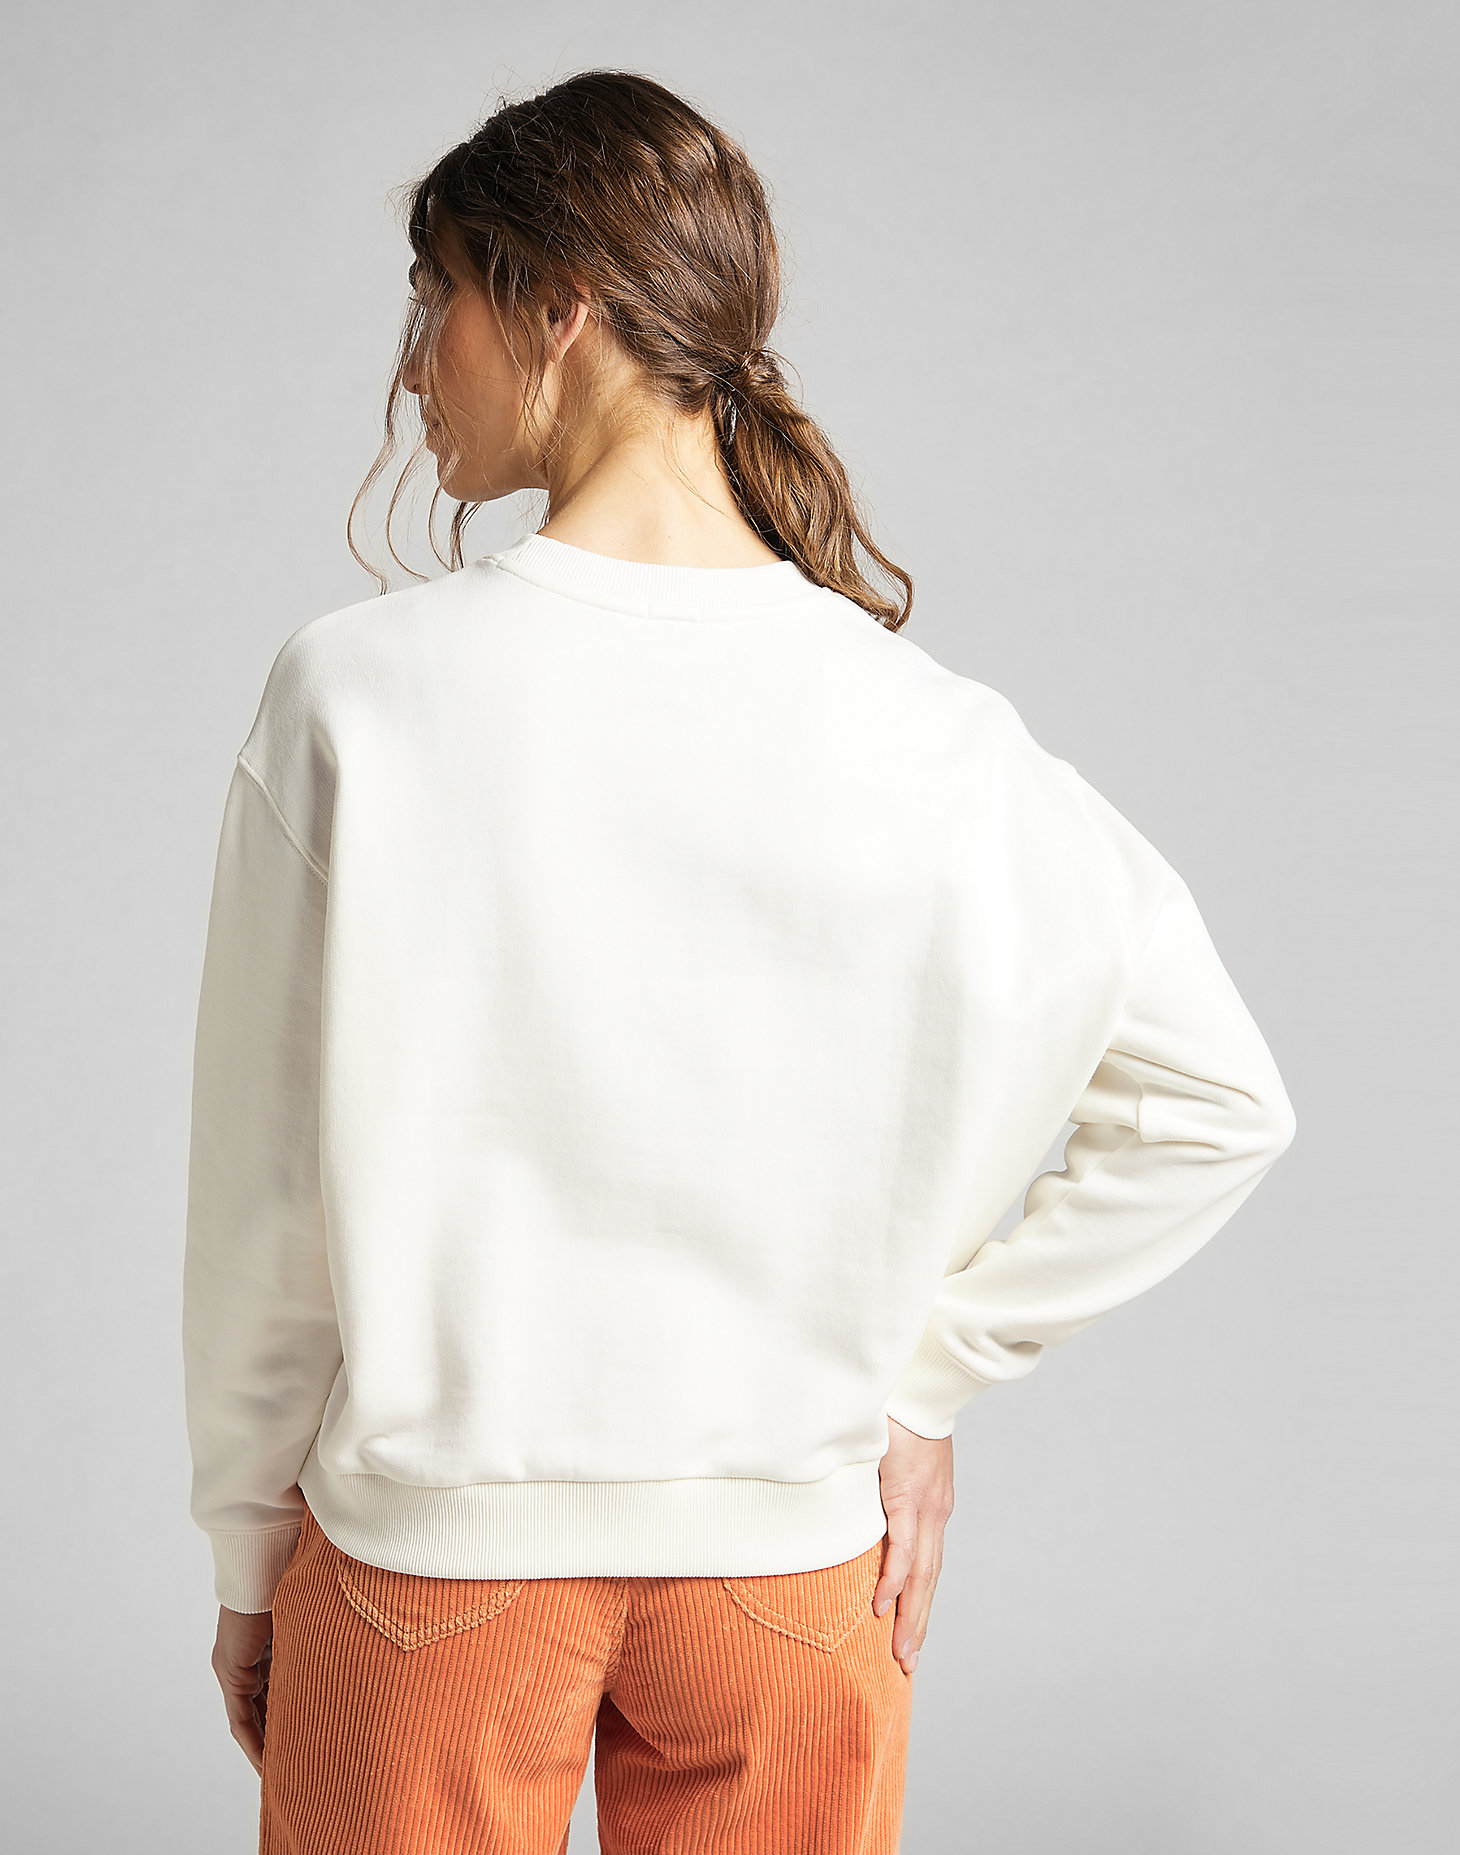 Sweatshirt in White Canvas alternative view 1